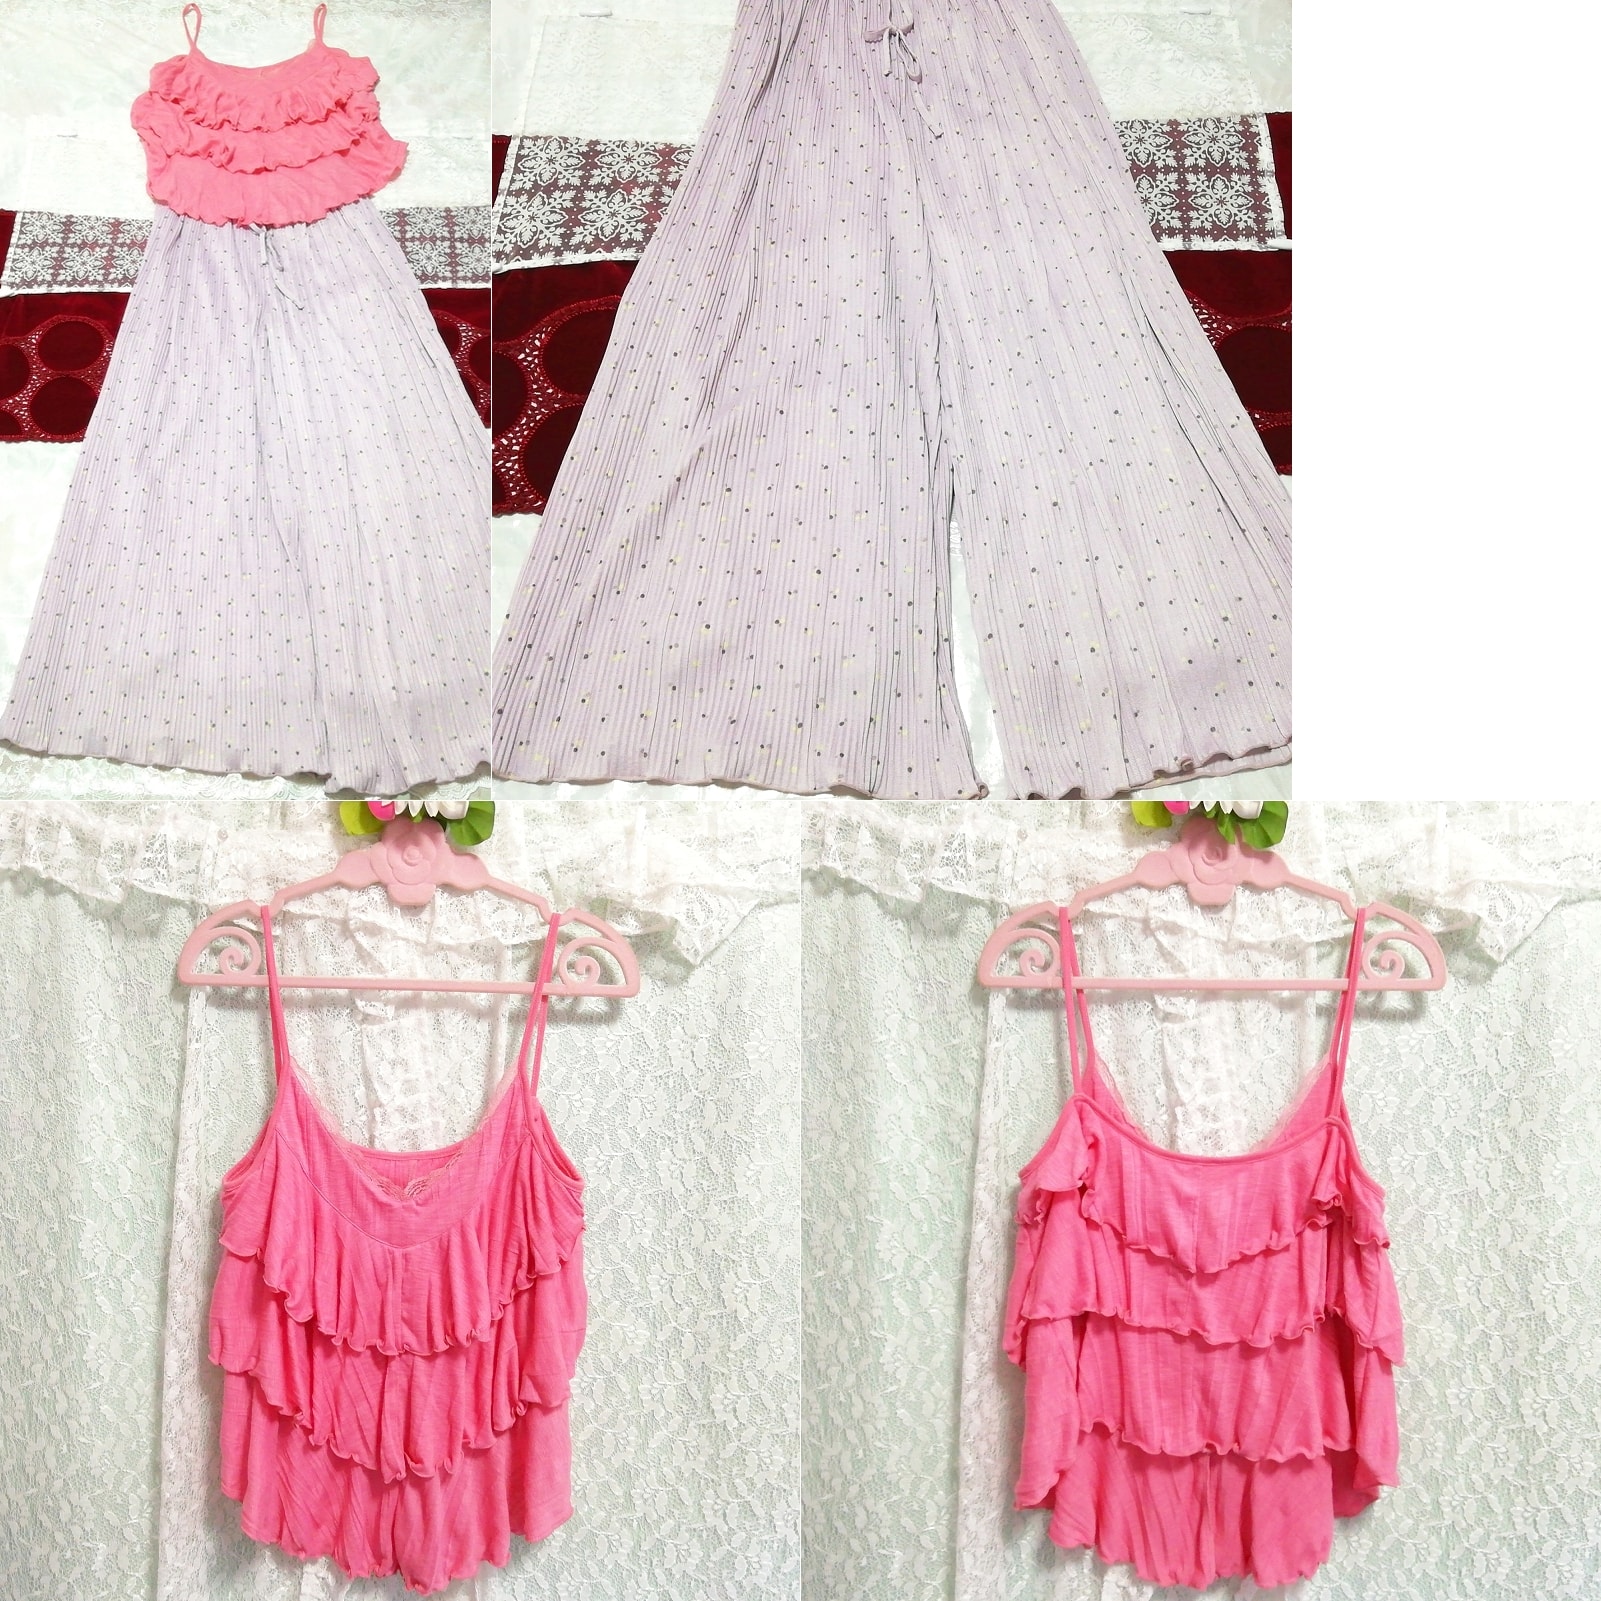 핑크 프릴 캐미솔 네글리제 나이트가운 나이트웨어 퍼플 꽃무늬 맥시 스커트 2P, 패션, 숙녀 패션, 잠옷, 잠옷